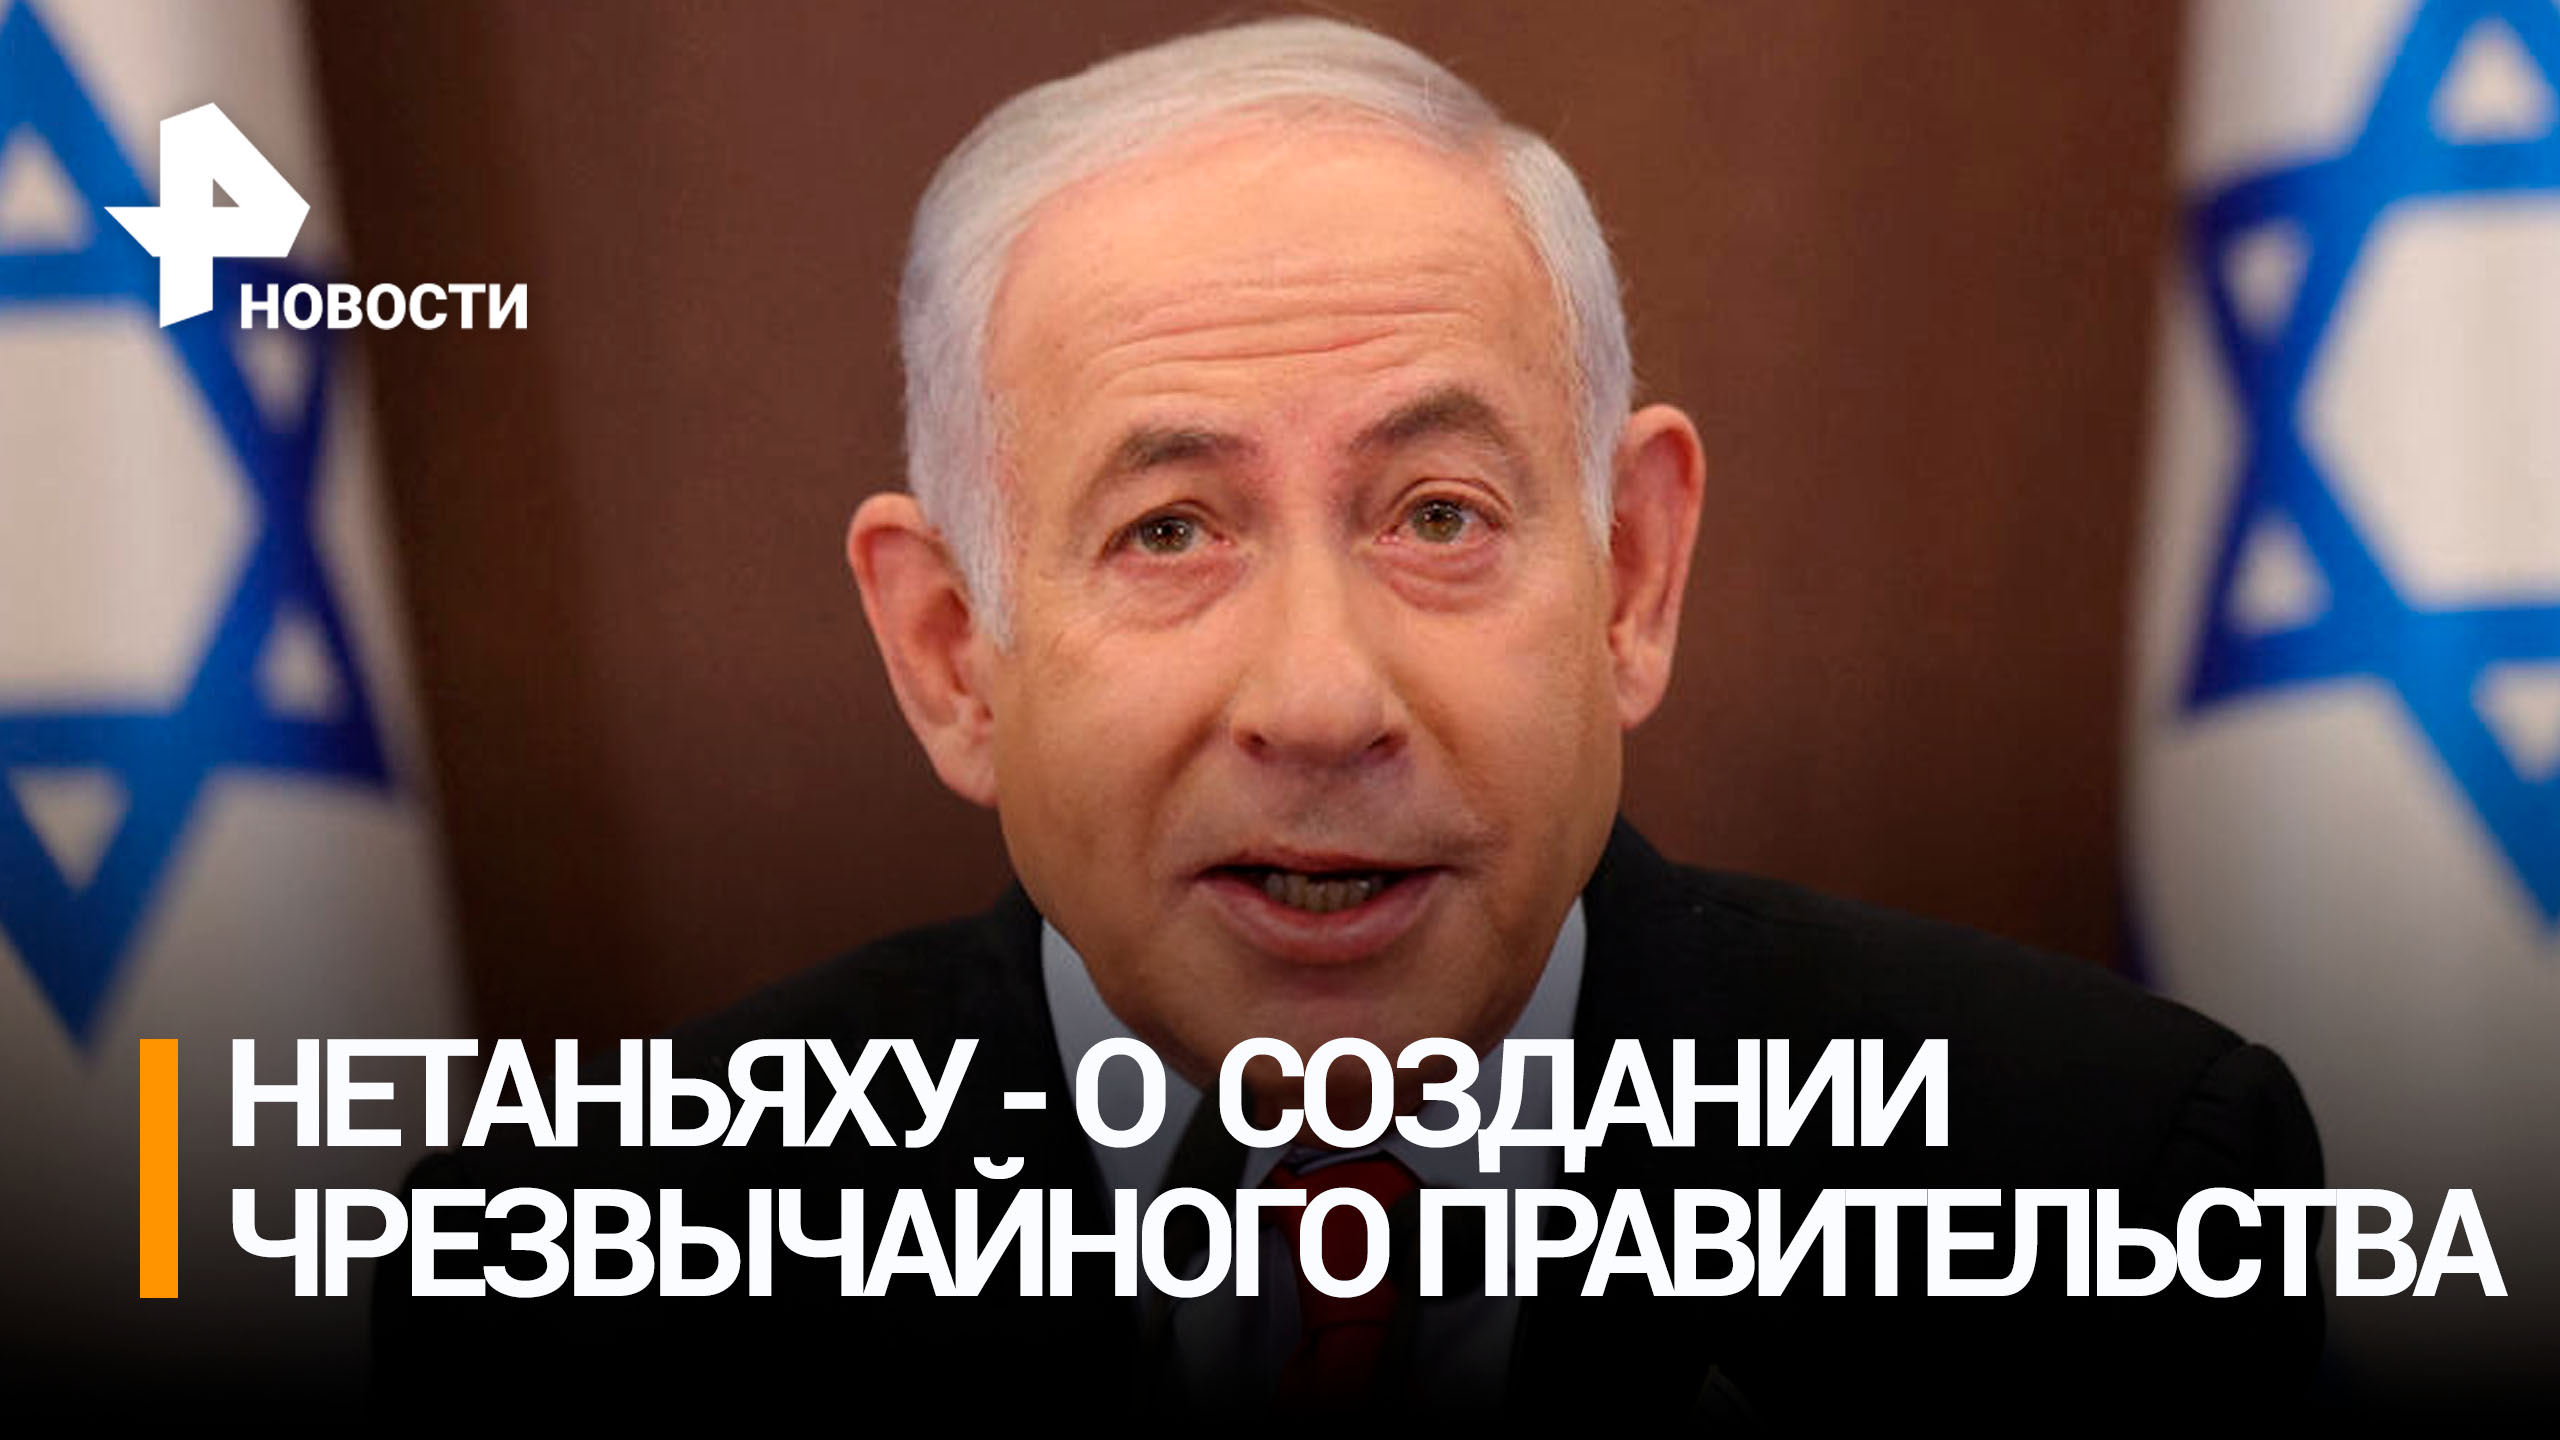 Нетаньяху заявил о создании чрезвычайного временного правительства / РЕН Новости